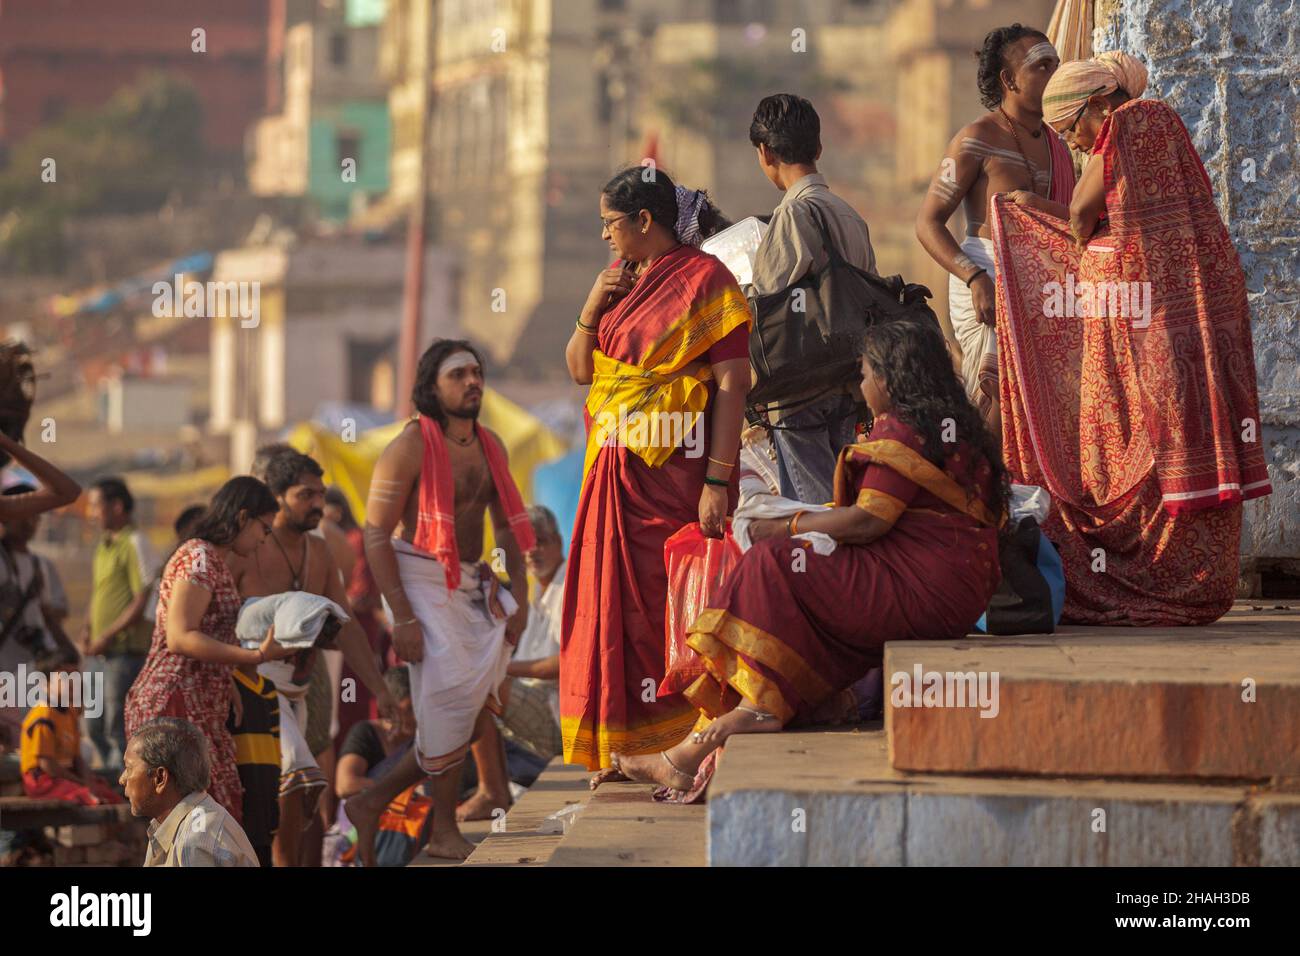 Pilgrims and sadhus at holy ghats in Varanasi, India Stock Photo